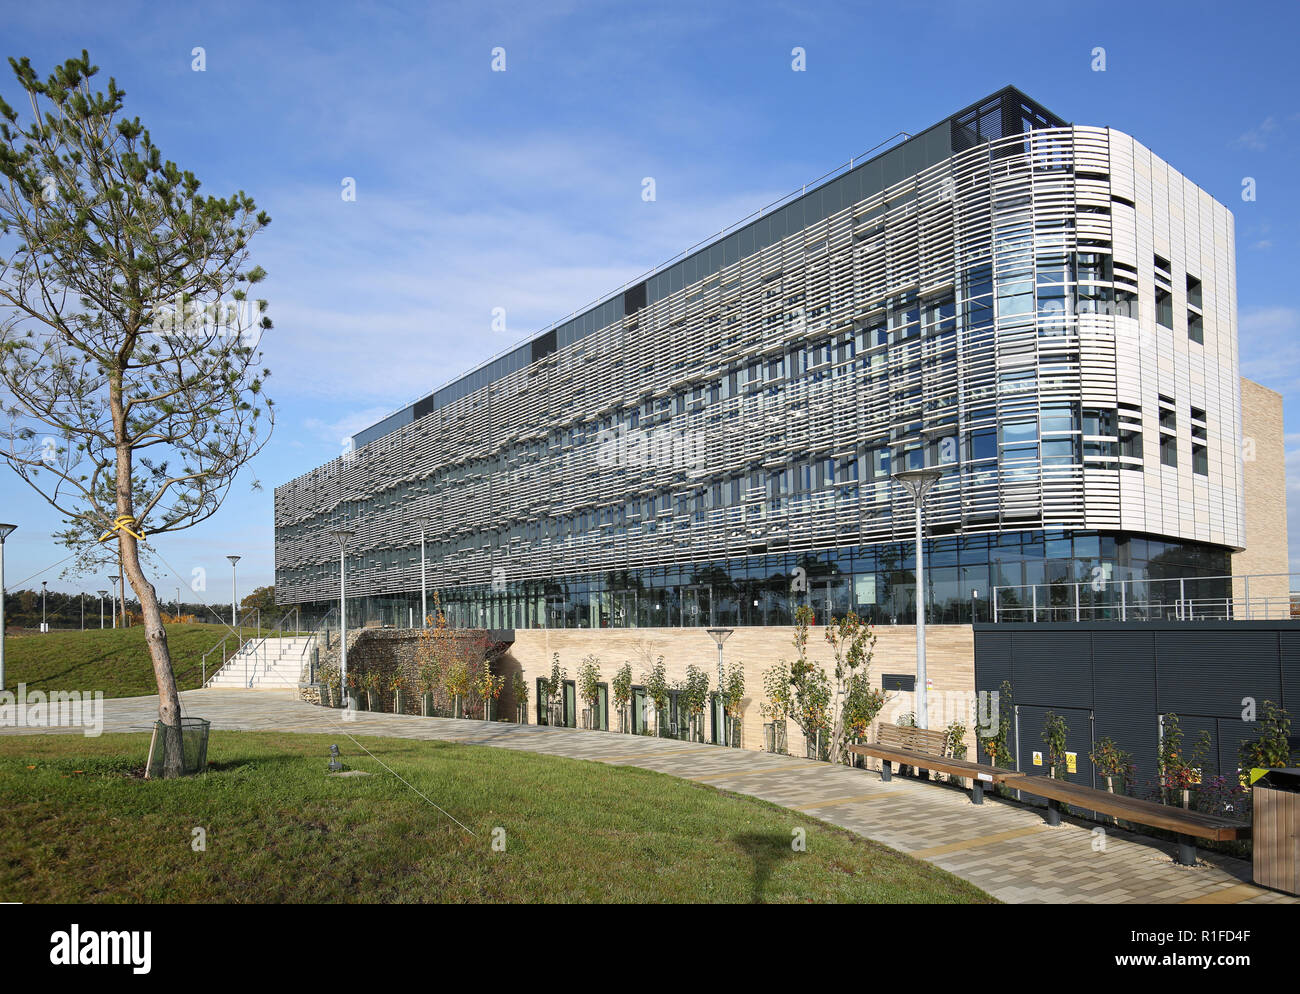 Il nuovo istituto il sistema Quadram edificio in Norwich Research Park. Esegue il taglio-bordo cibo e bioscience ricerca e servizi di endoscopia. Foto Stock